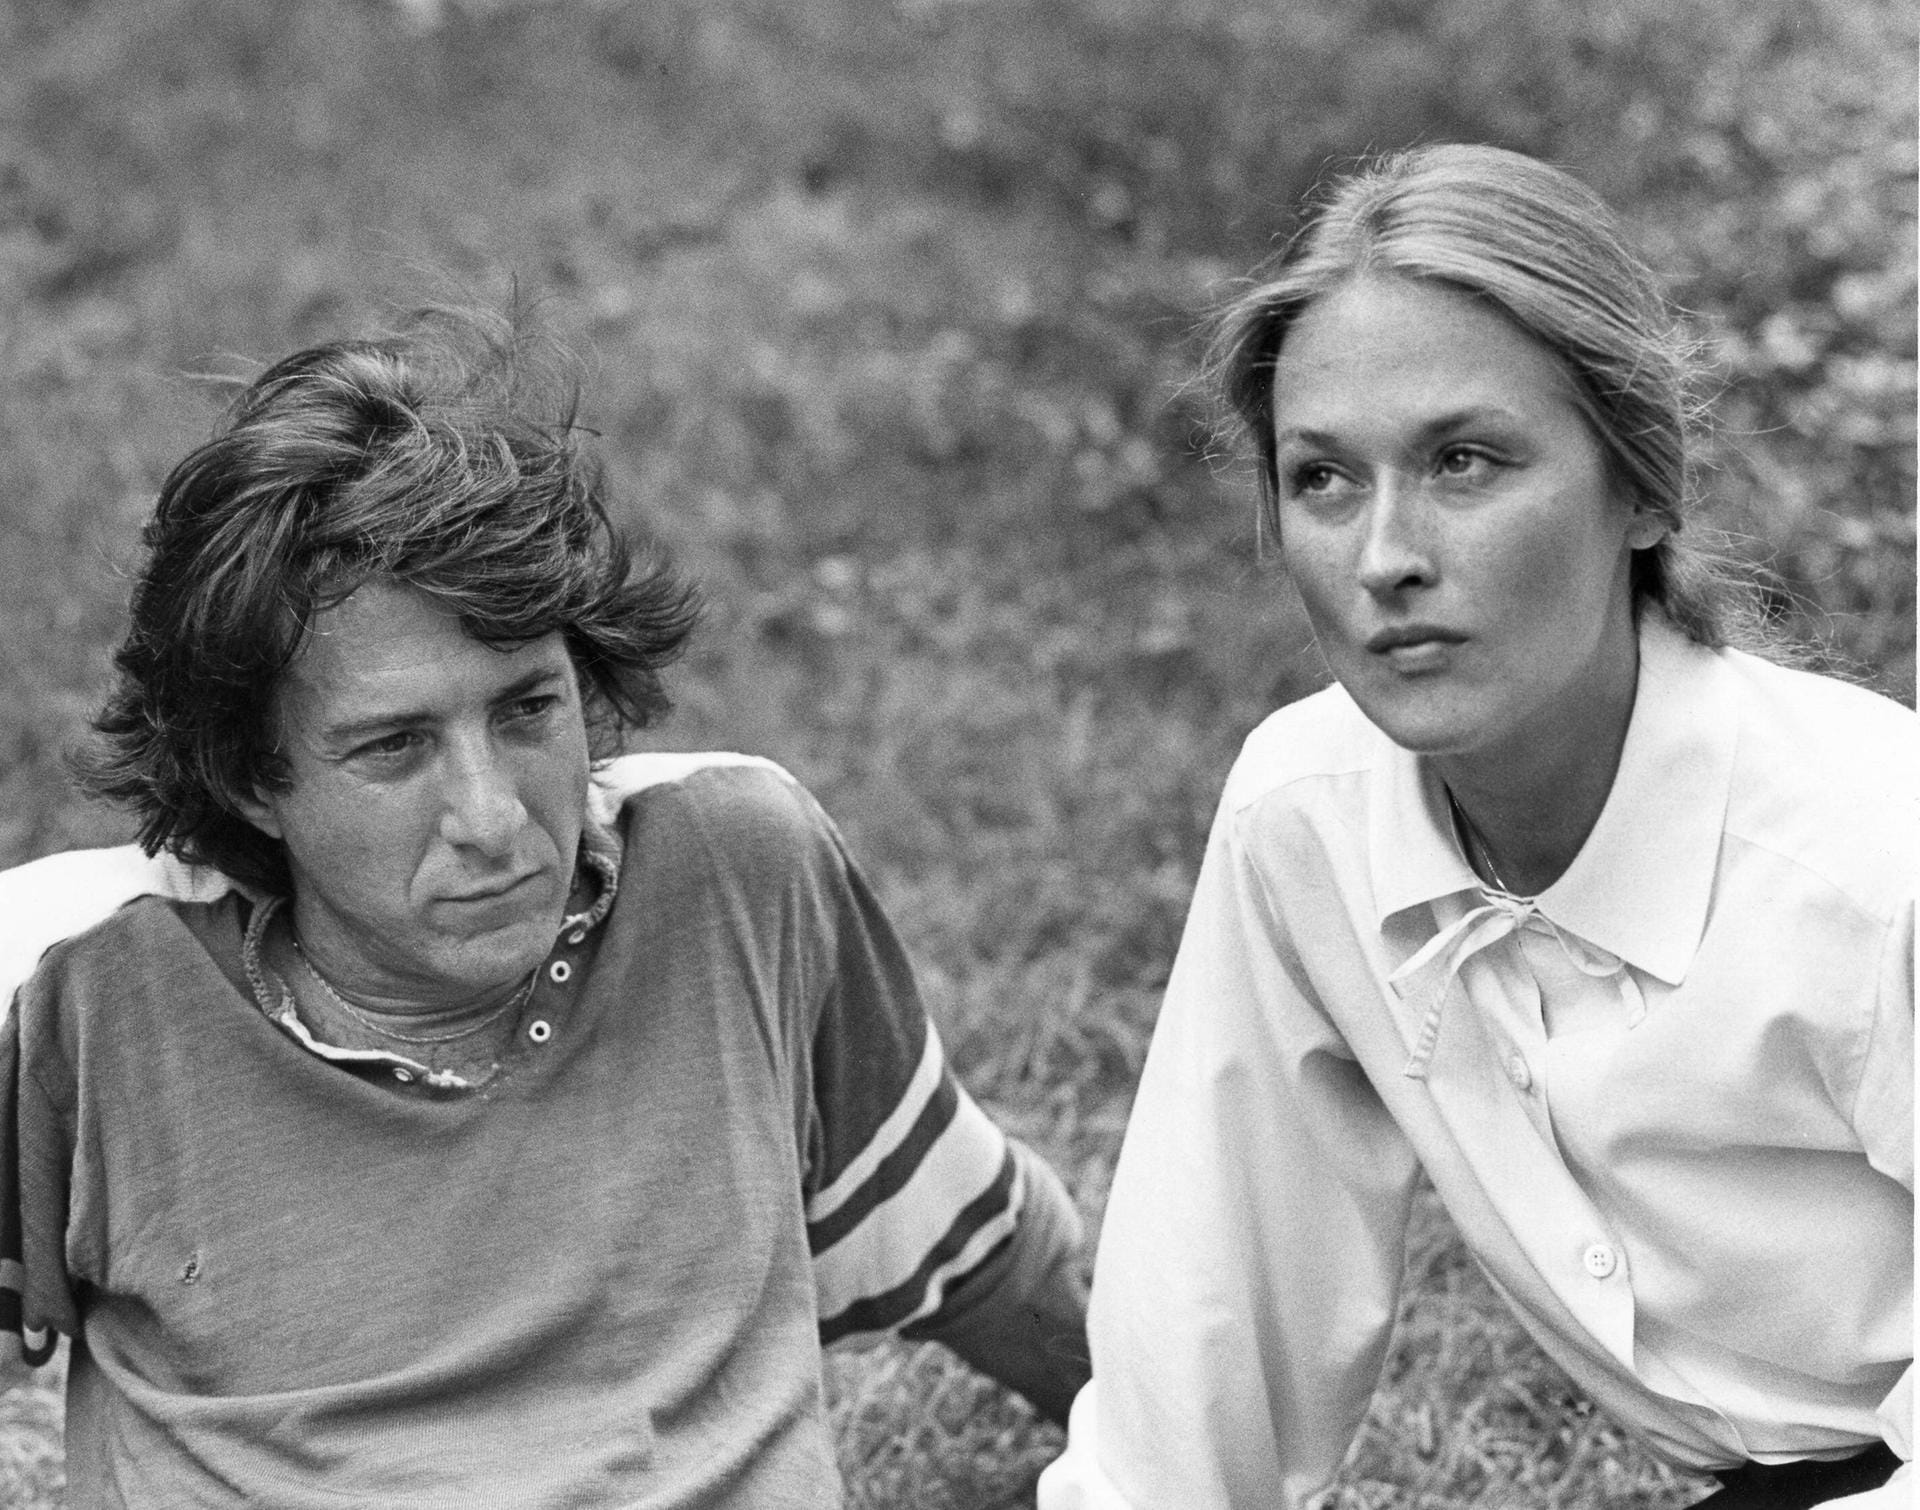 "Kramer vs. Kramer" 1979: An der Seite von Dustin Hoffman bekam Meryl Streep ihren ersten Oscar.